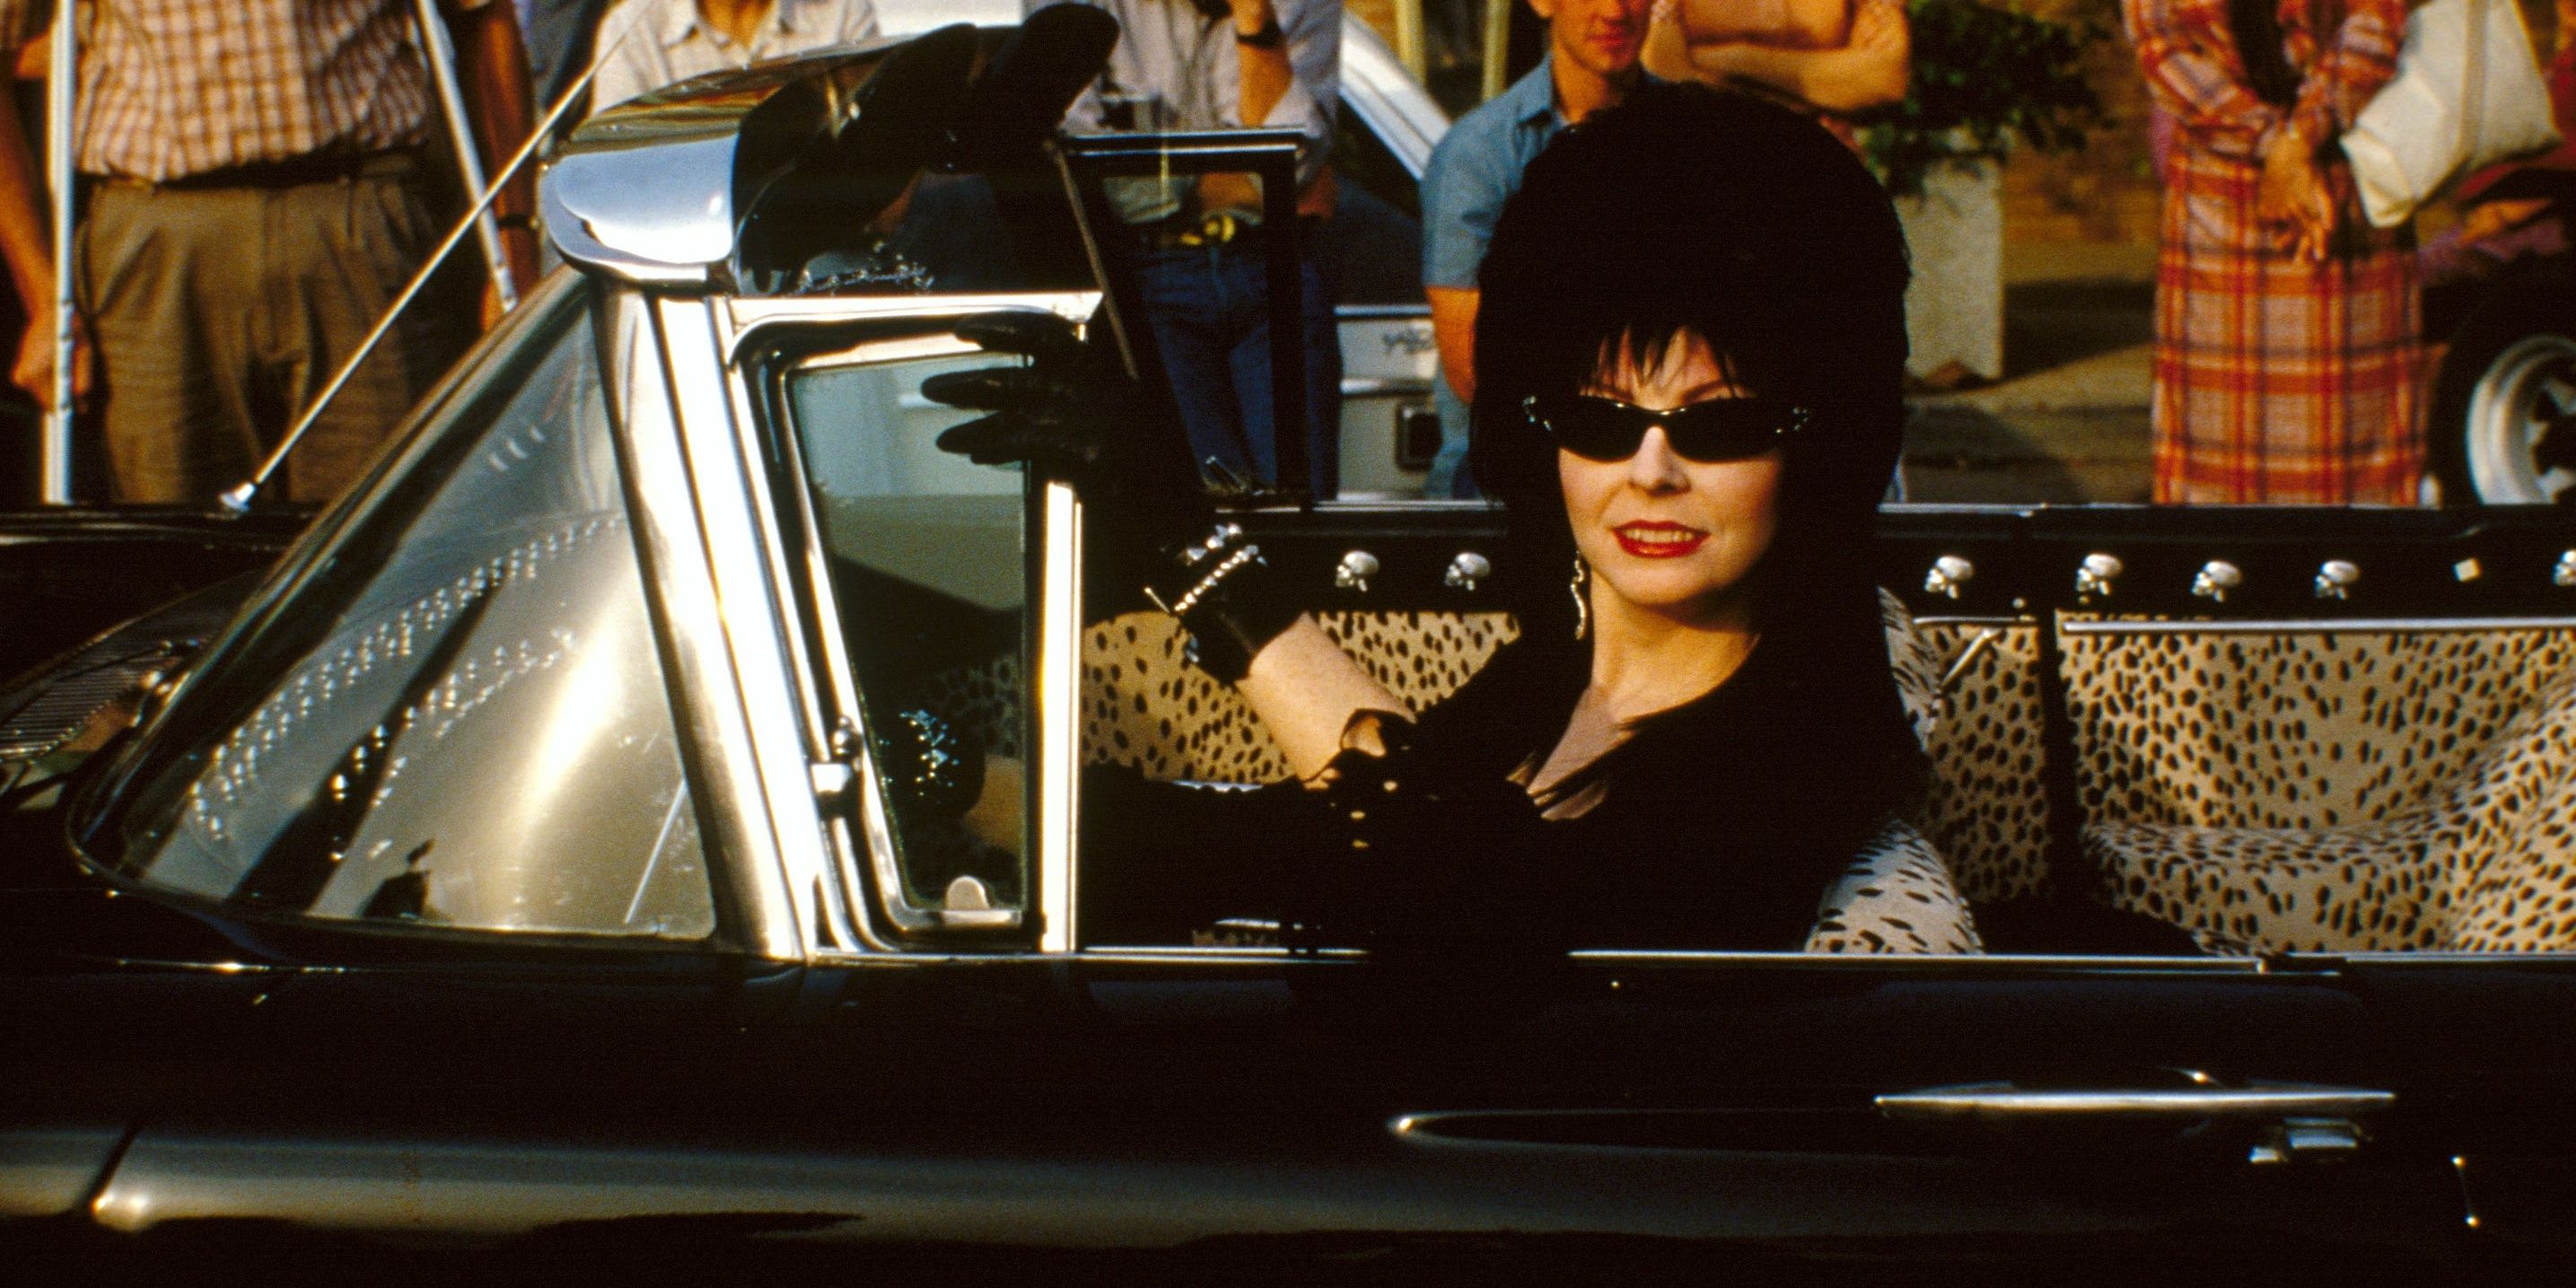 Kdo je Elvira a proč je tak důležitá?